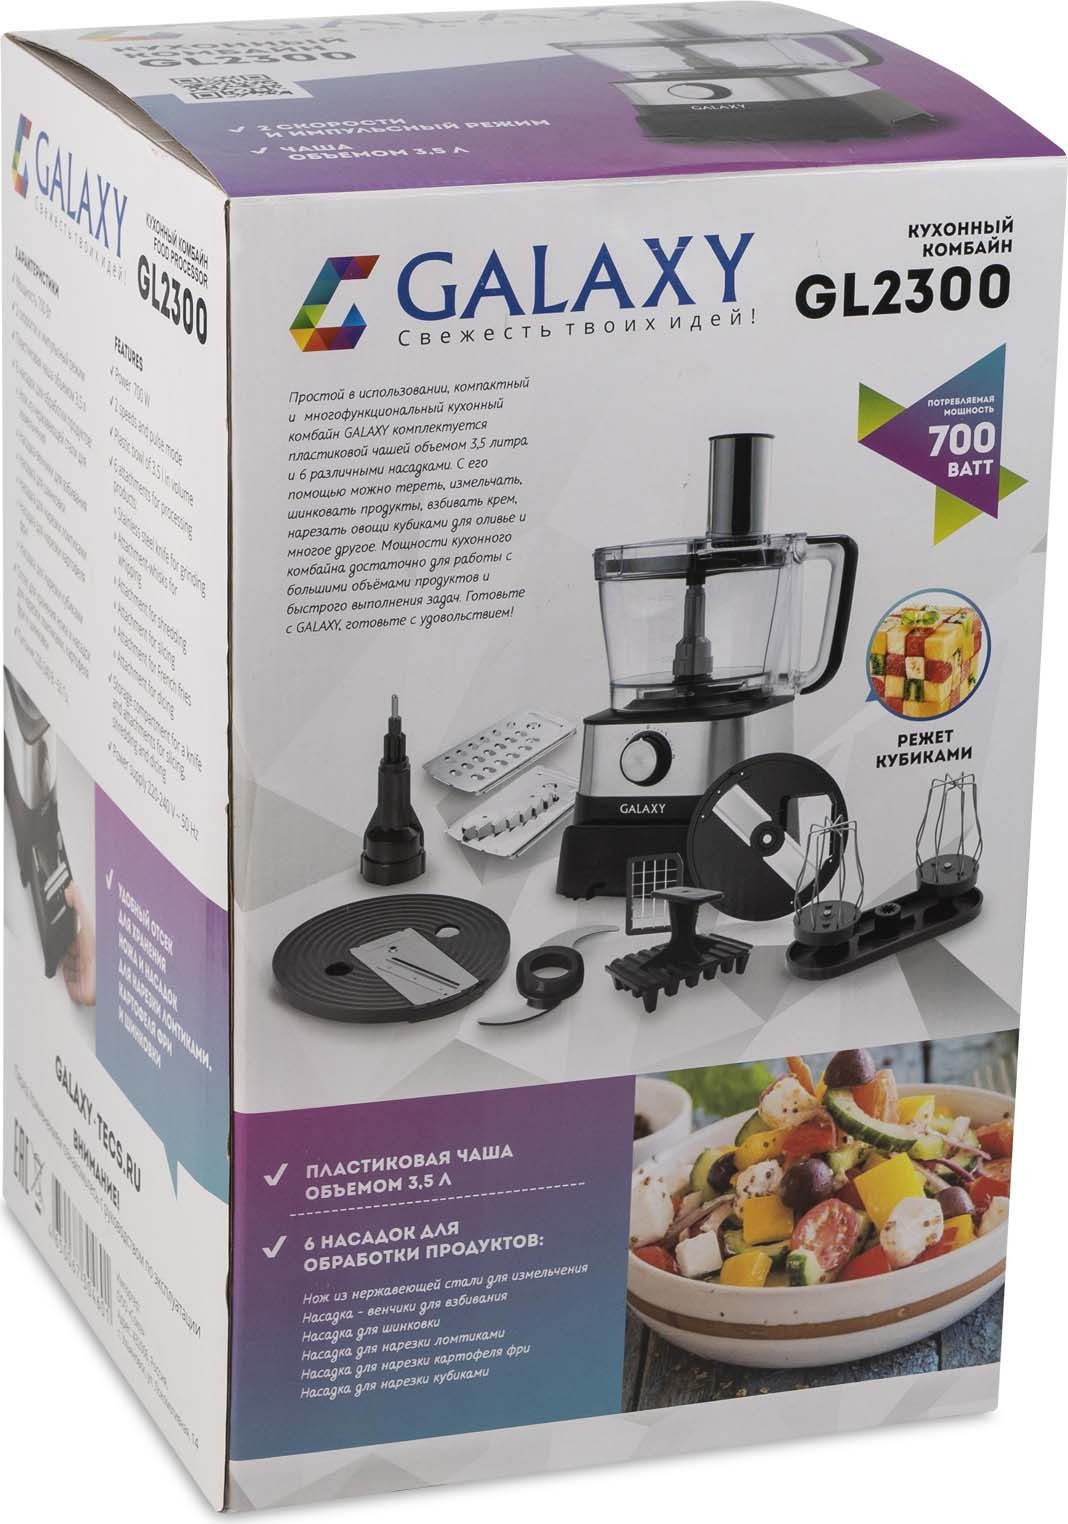   Galaxy GL 2300, : , 